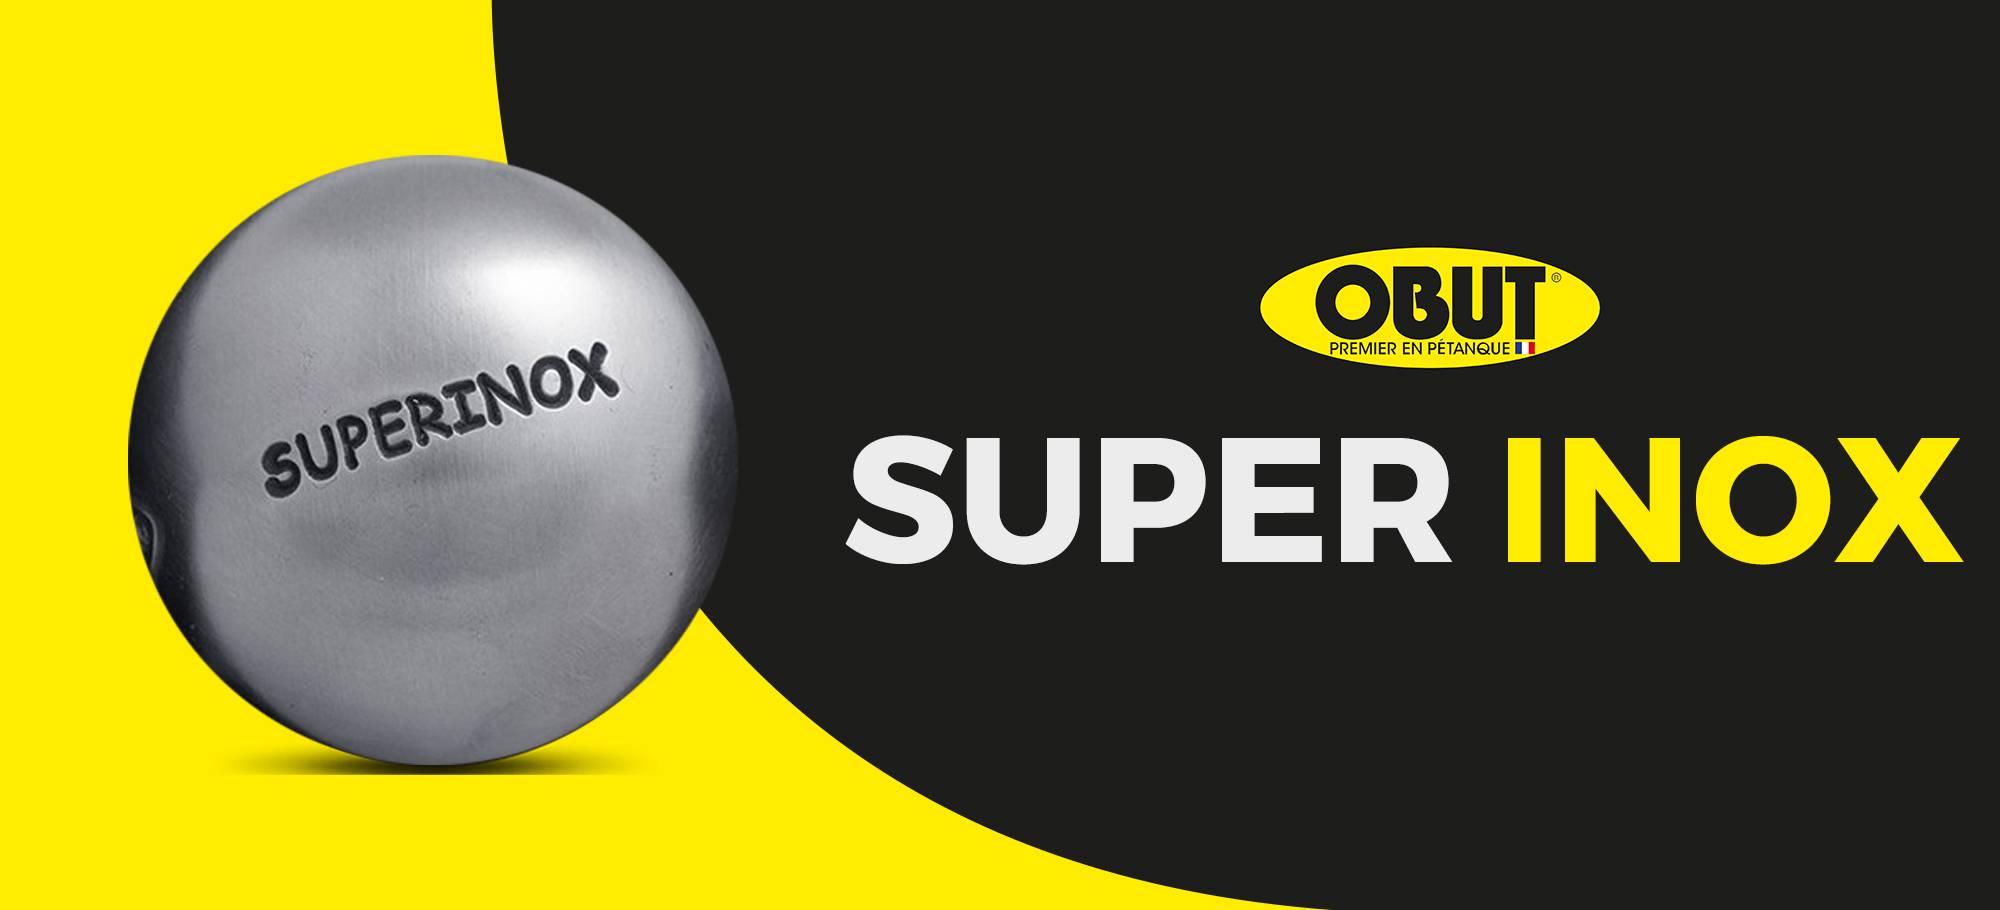 Lire la suite à propos de l’article SuperInox, une nouvelle boule de pétanque qui fait fureur chez Obut